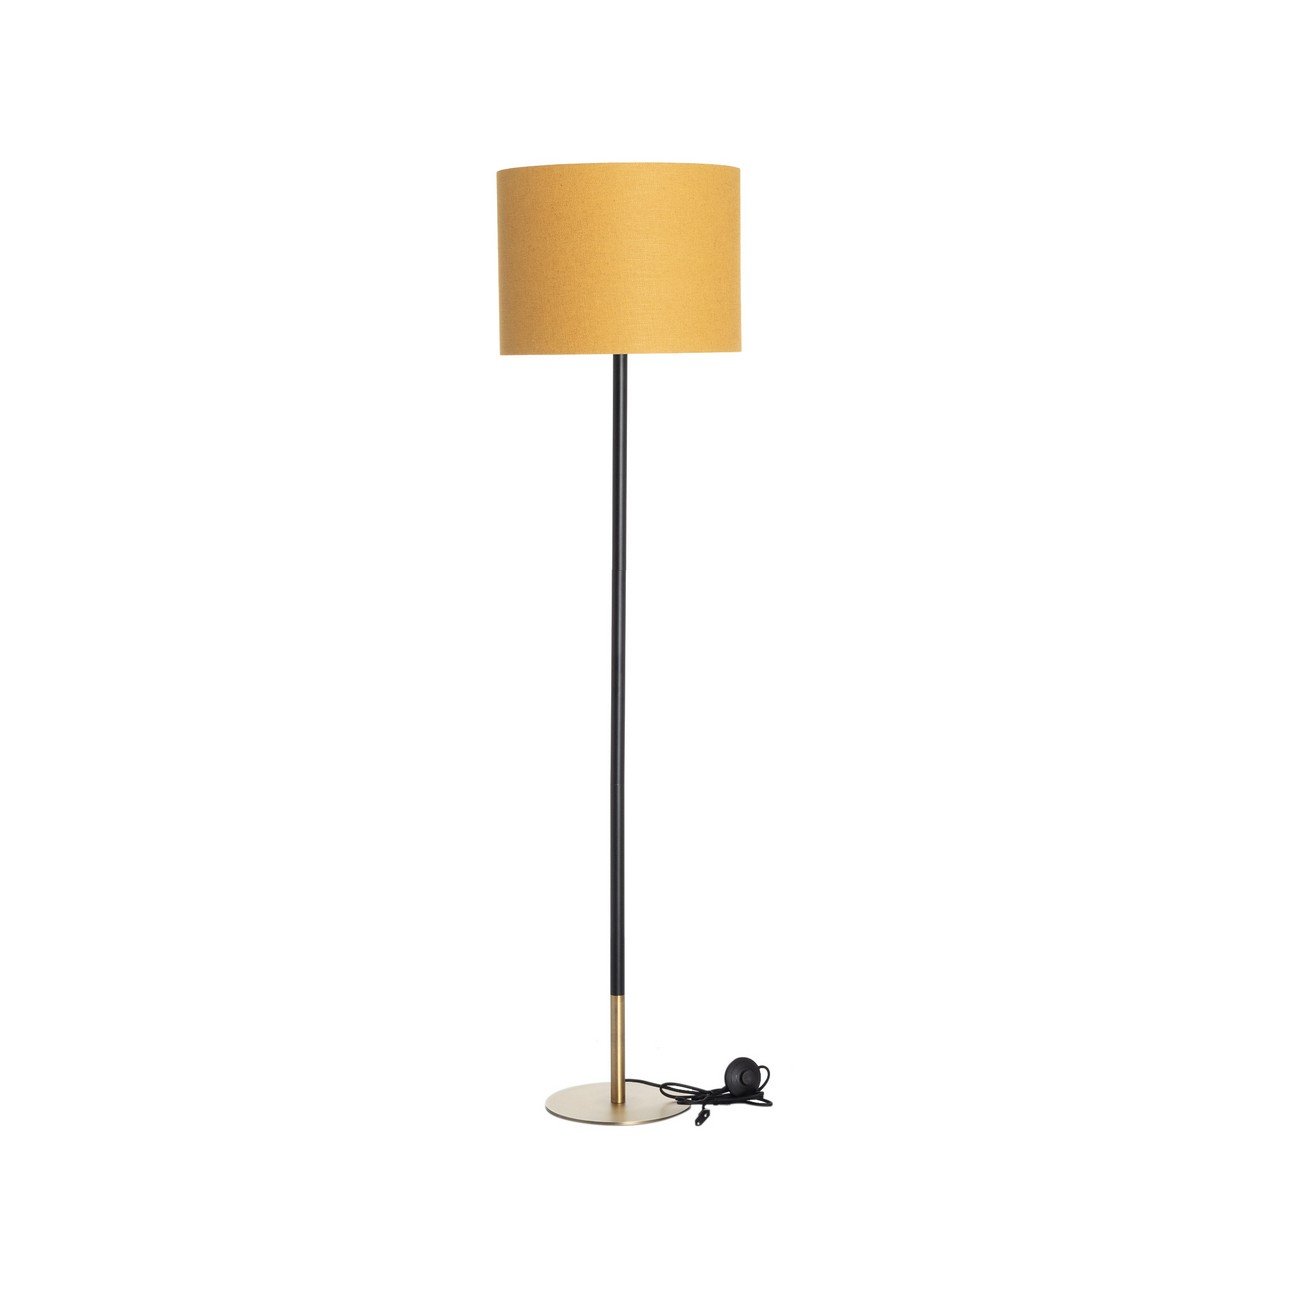 E-shop Dekoria Stojacia lampa Hailey Yellow 163cm, 40 x 163 cm